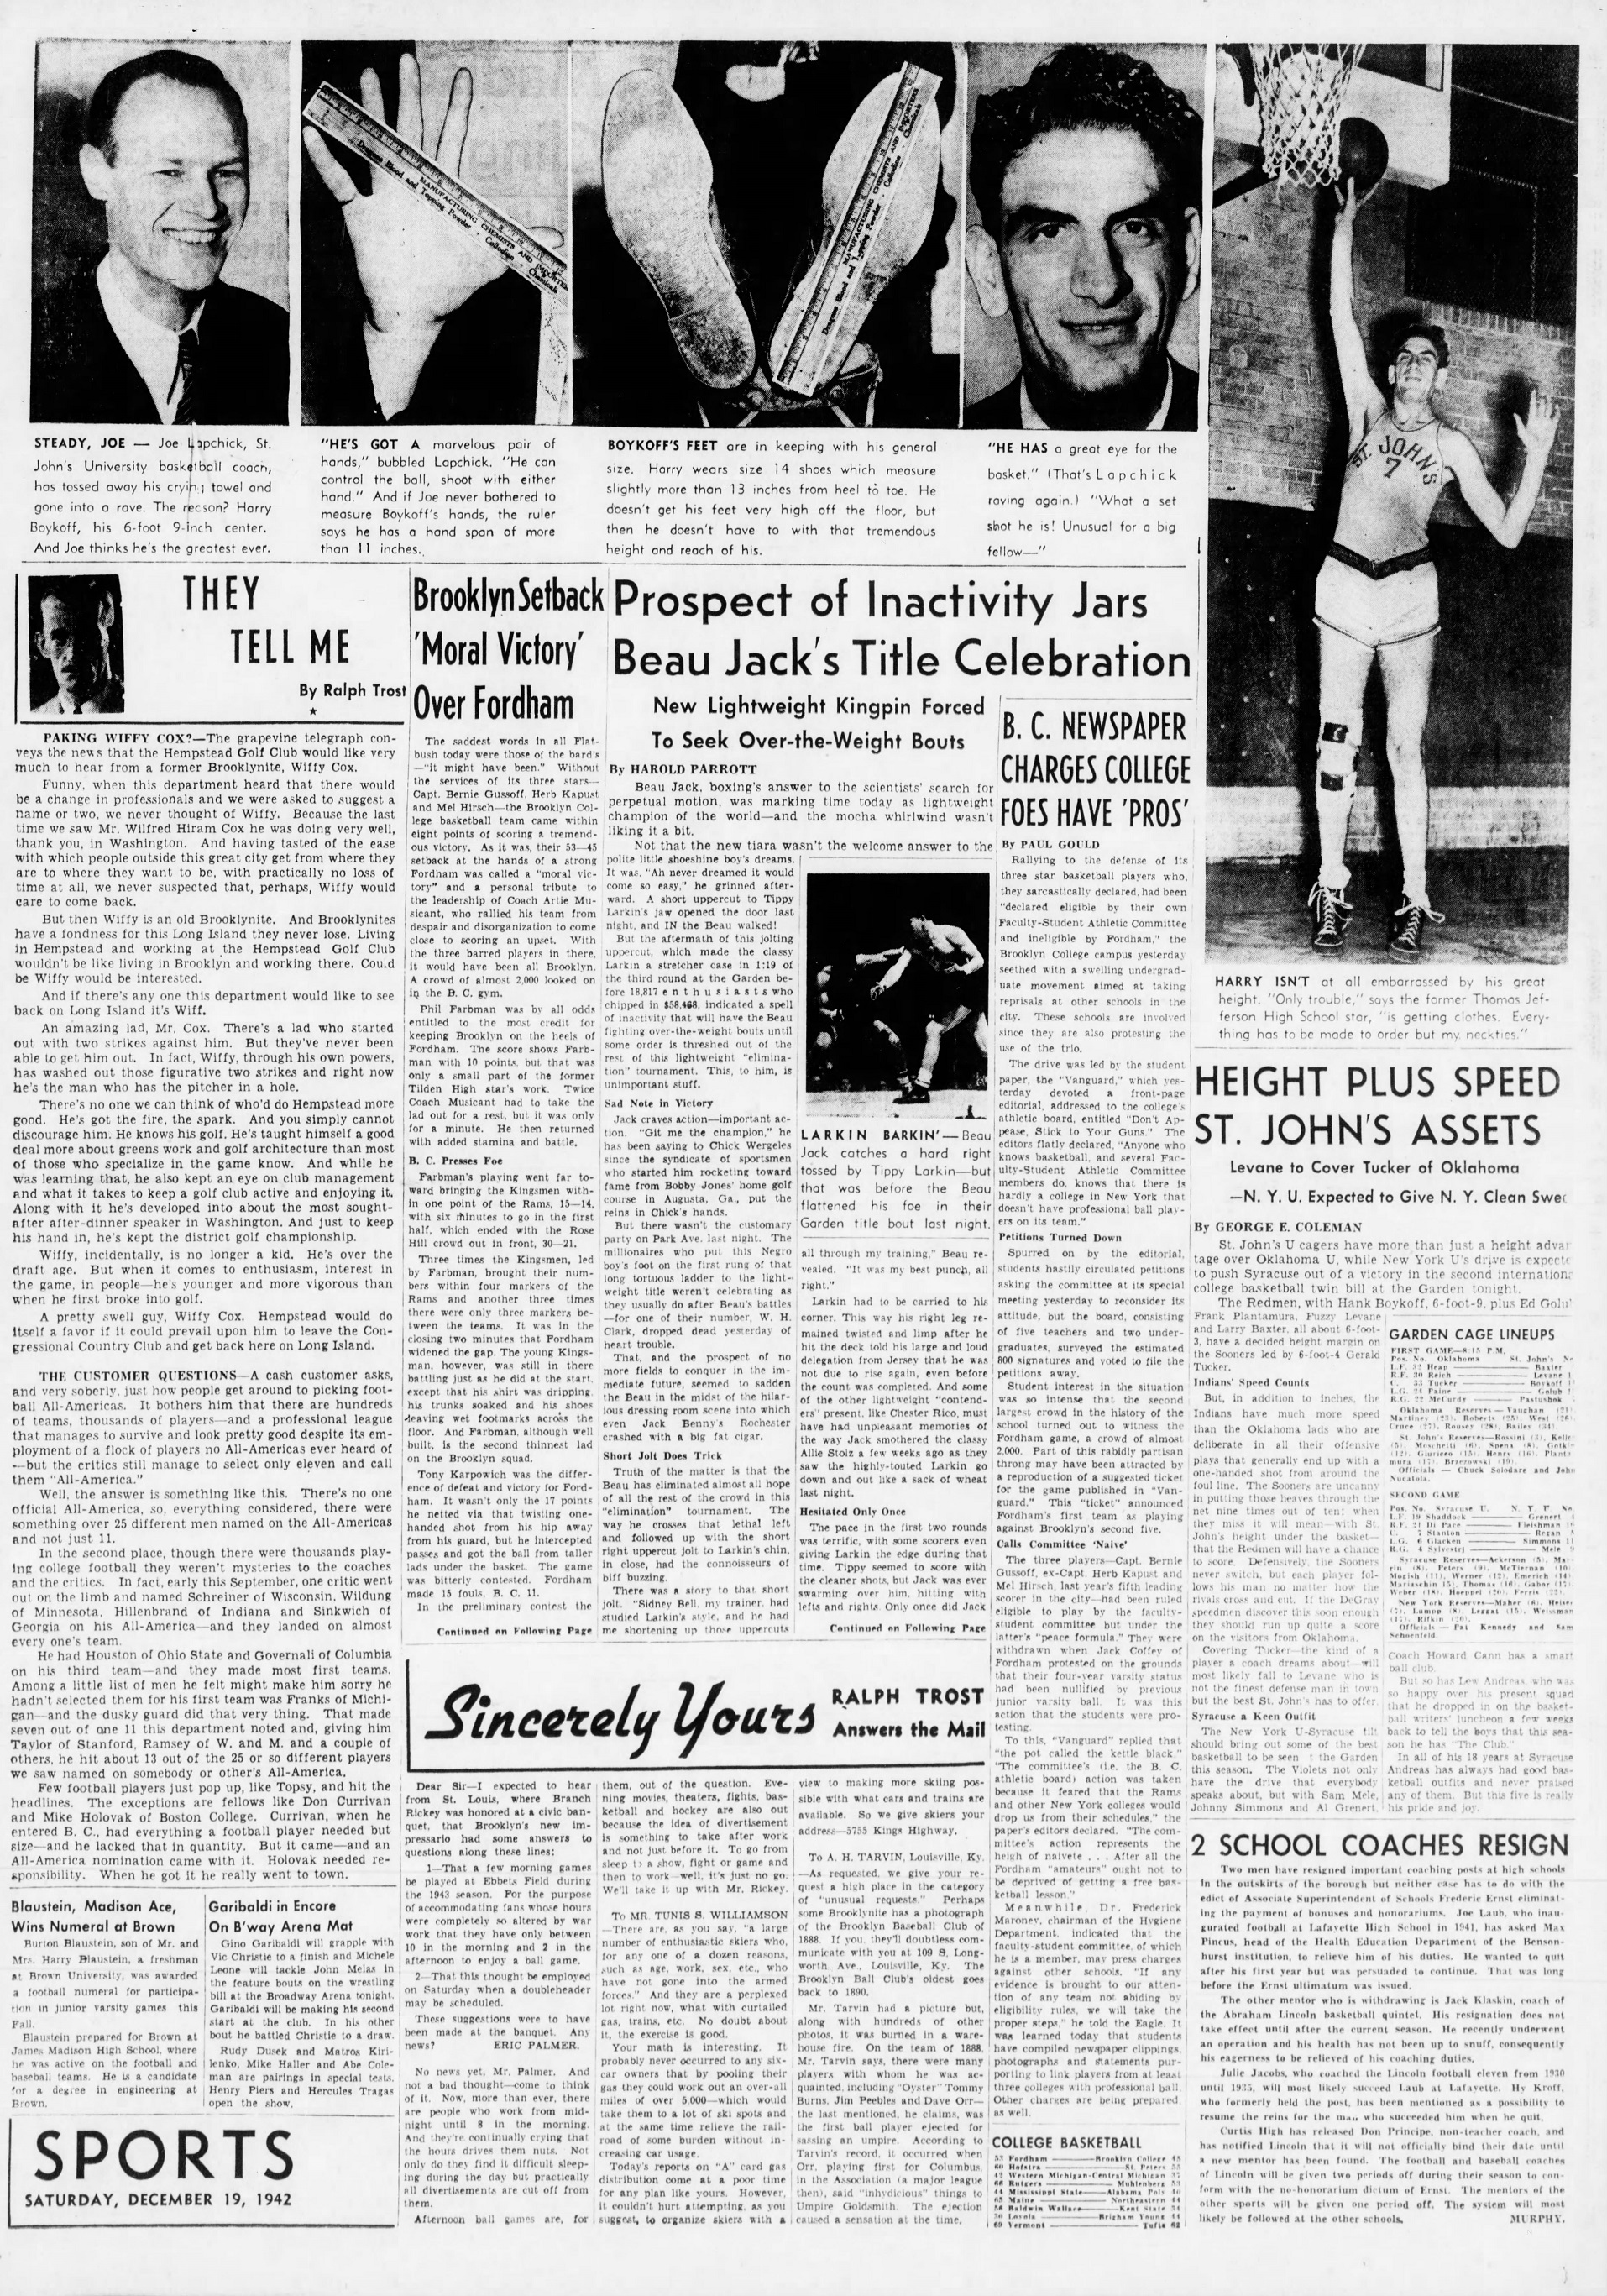 The_Brooklyn_Daily_Eagle_Sat__Dec_19__1942_(3).jpg